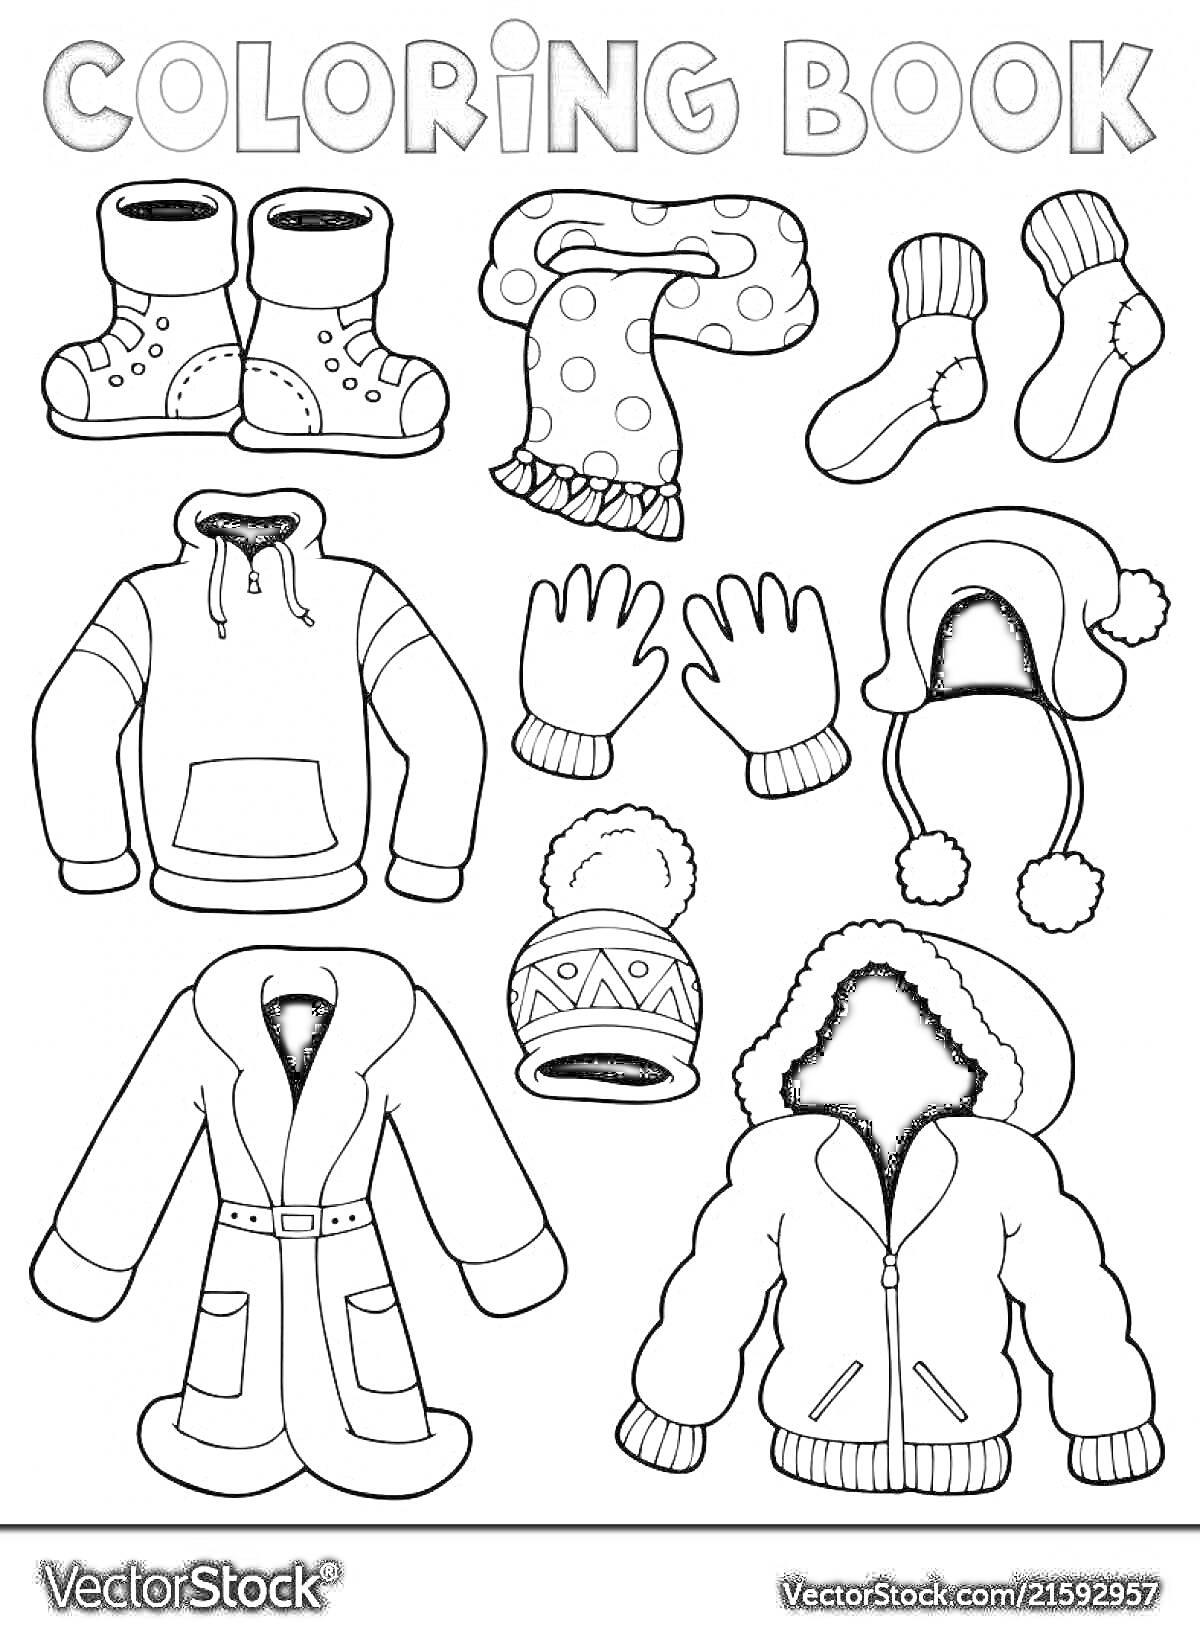 Раскраска детская зимняя одежда - сапоги, шарф, носки, куртка с капюшоном, перчатки, шапка, пальто, куртка с мехом